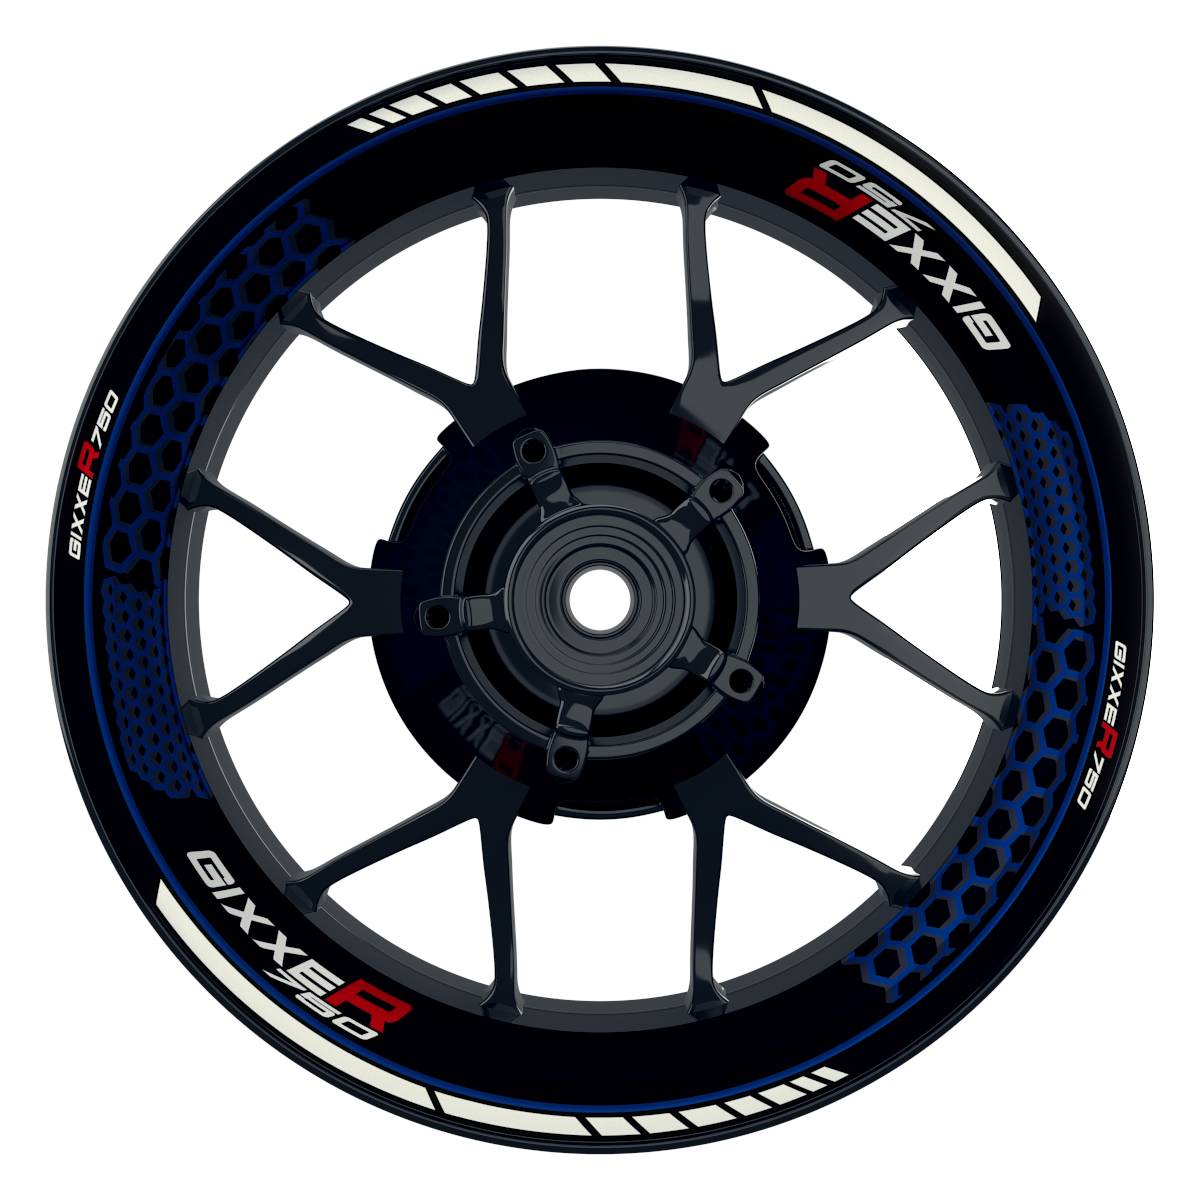 GIXXER750 Hexagon schwarz blau Wheelsticker Felgenaufkleber